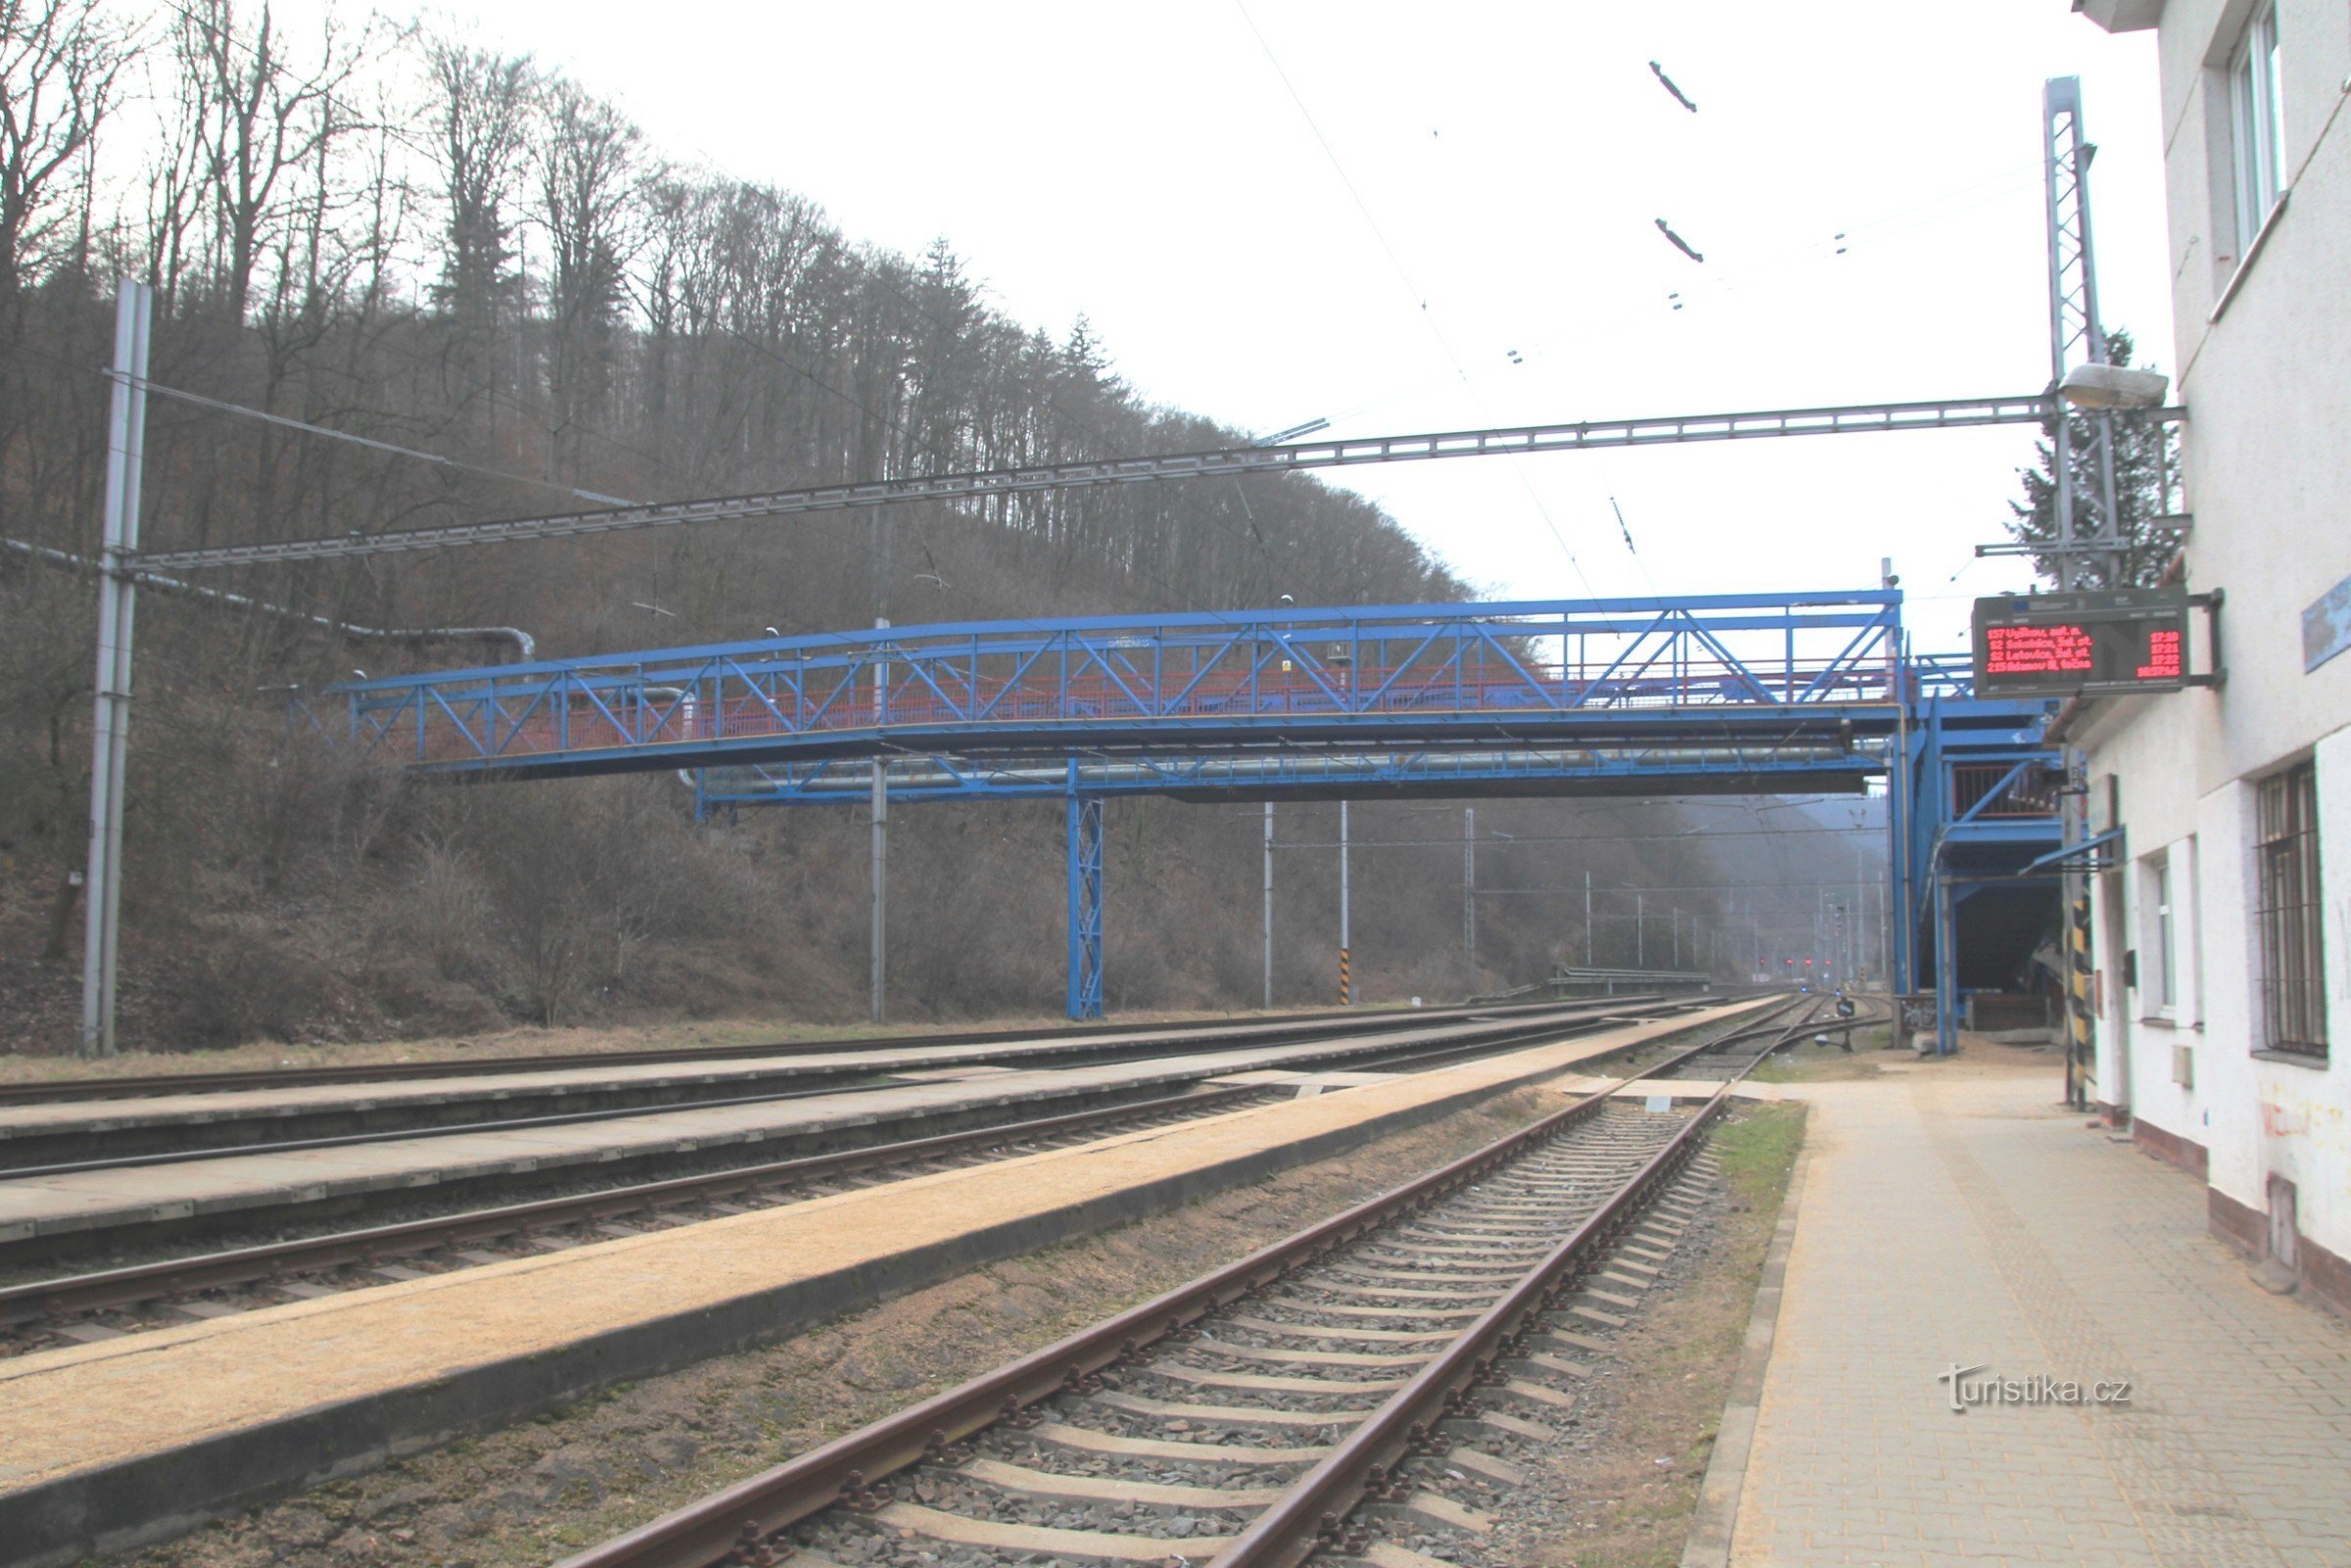 鉄道ヤードからの歩道橋の眺め、その後ろに Adastu ボイラーハウスからの産業橋